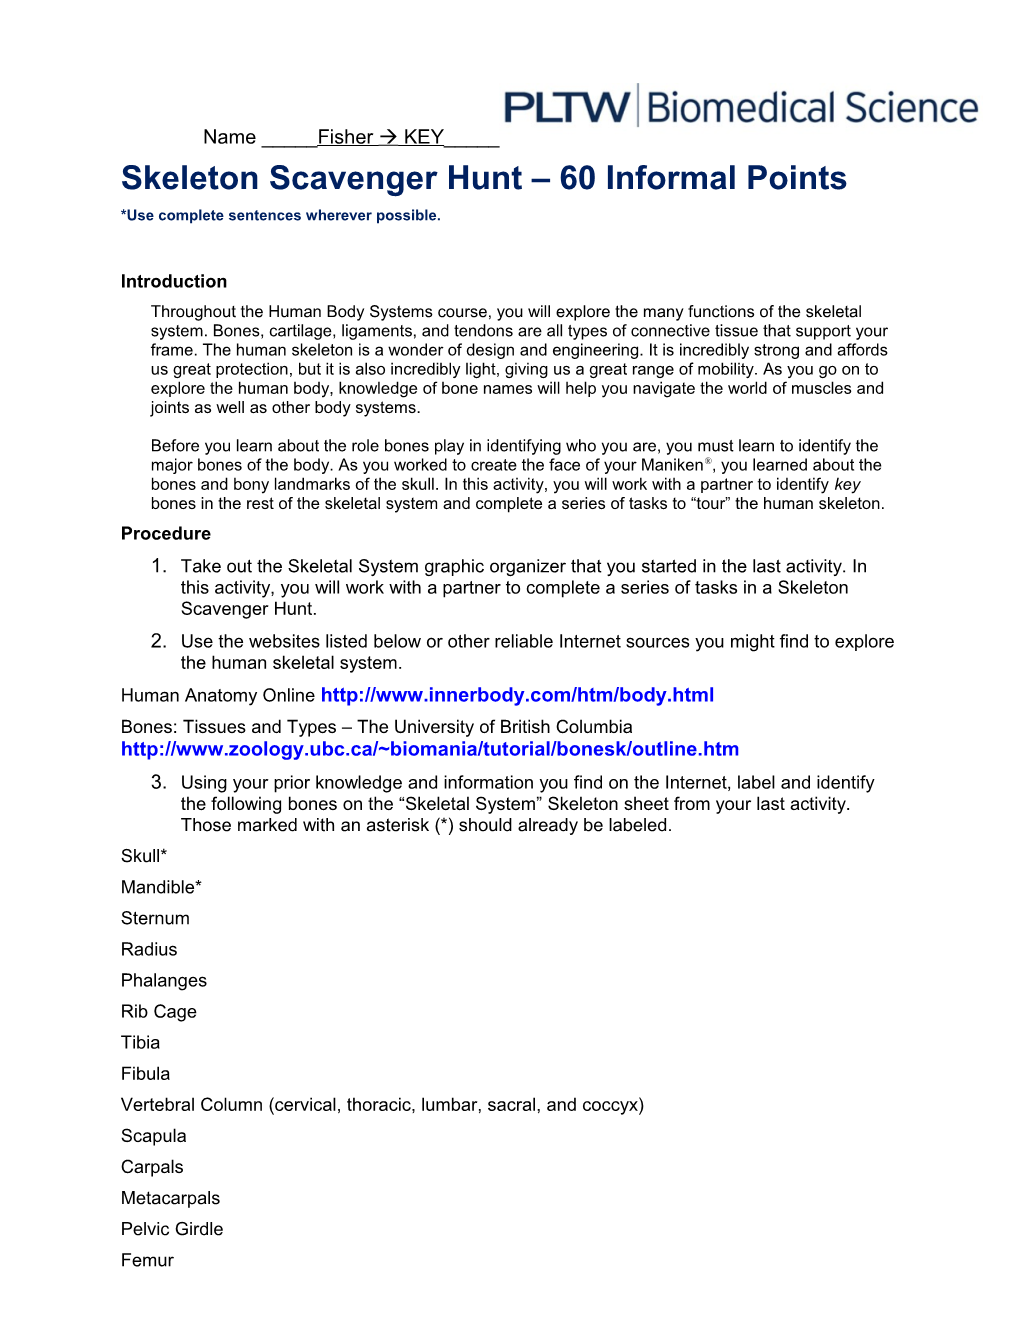 Skeleton Scavenger Hunt 60 Informal Points